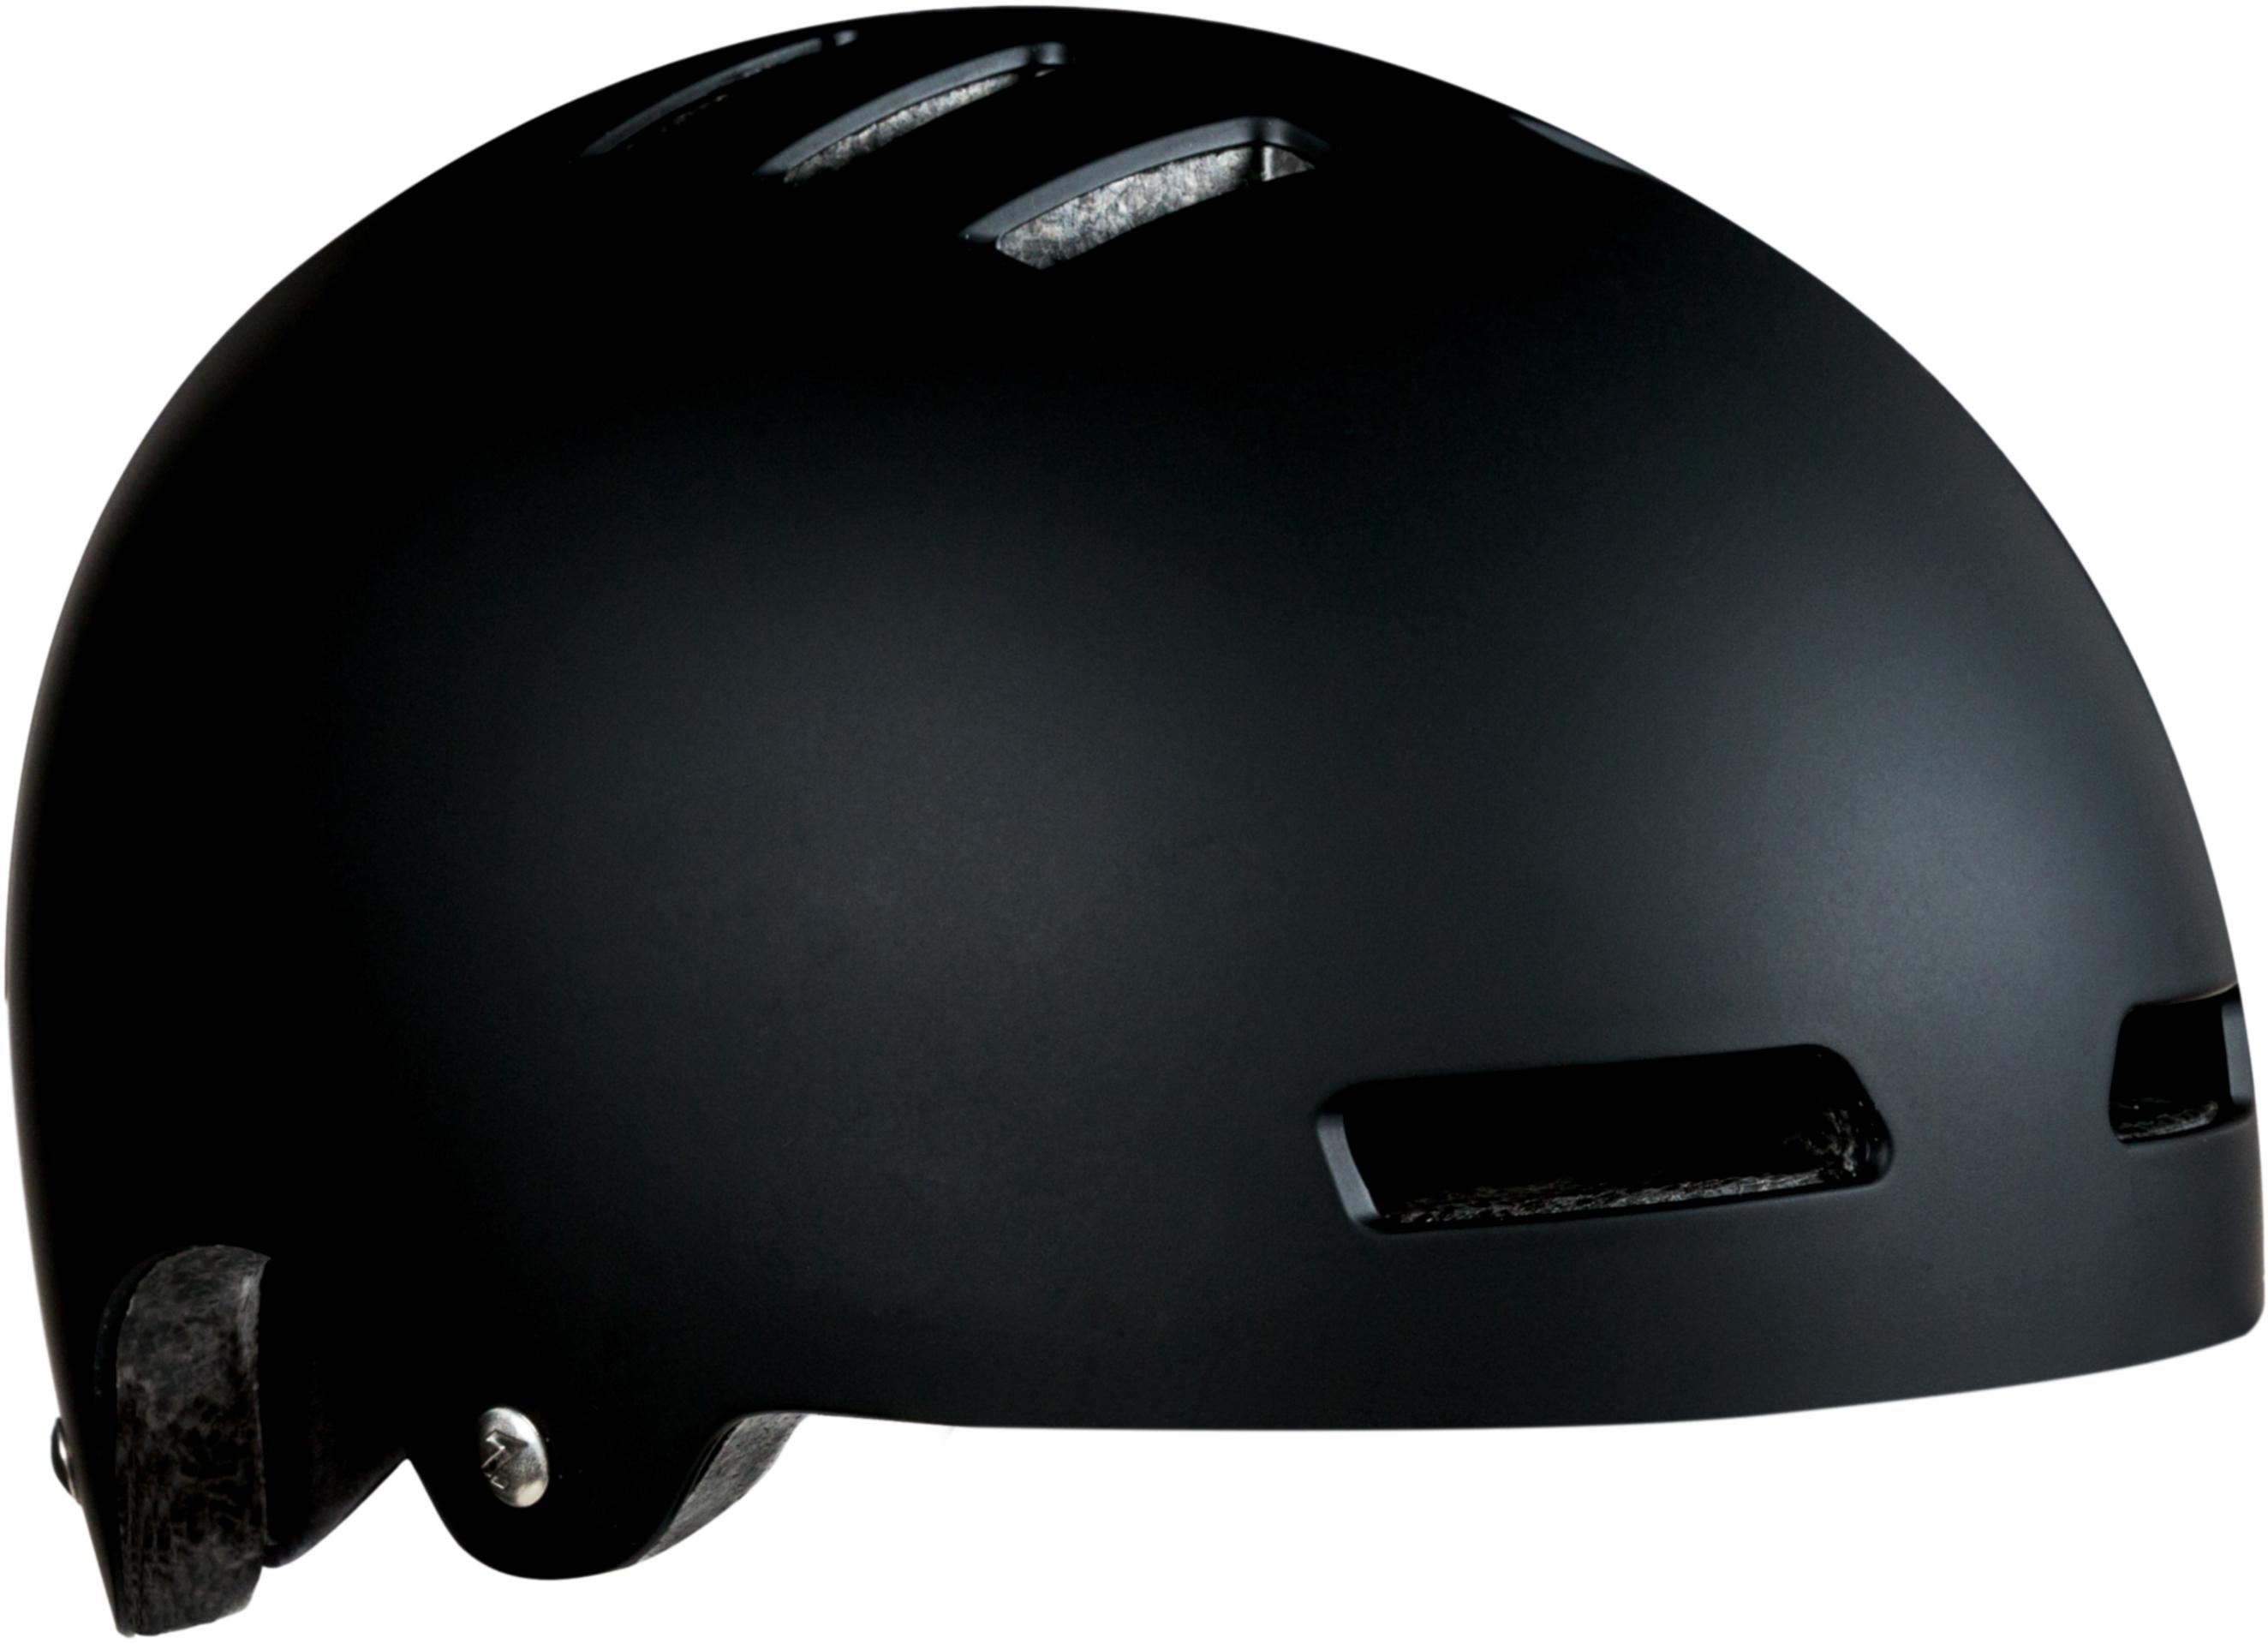 Lazer One Plus Helmet - Black, Large